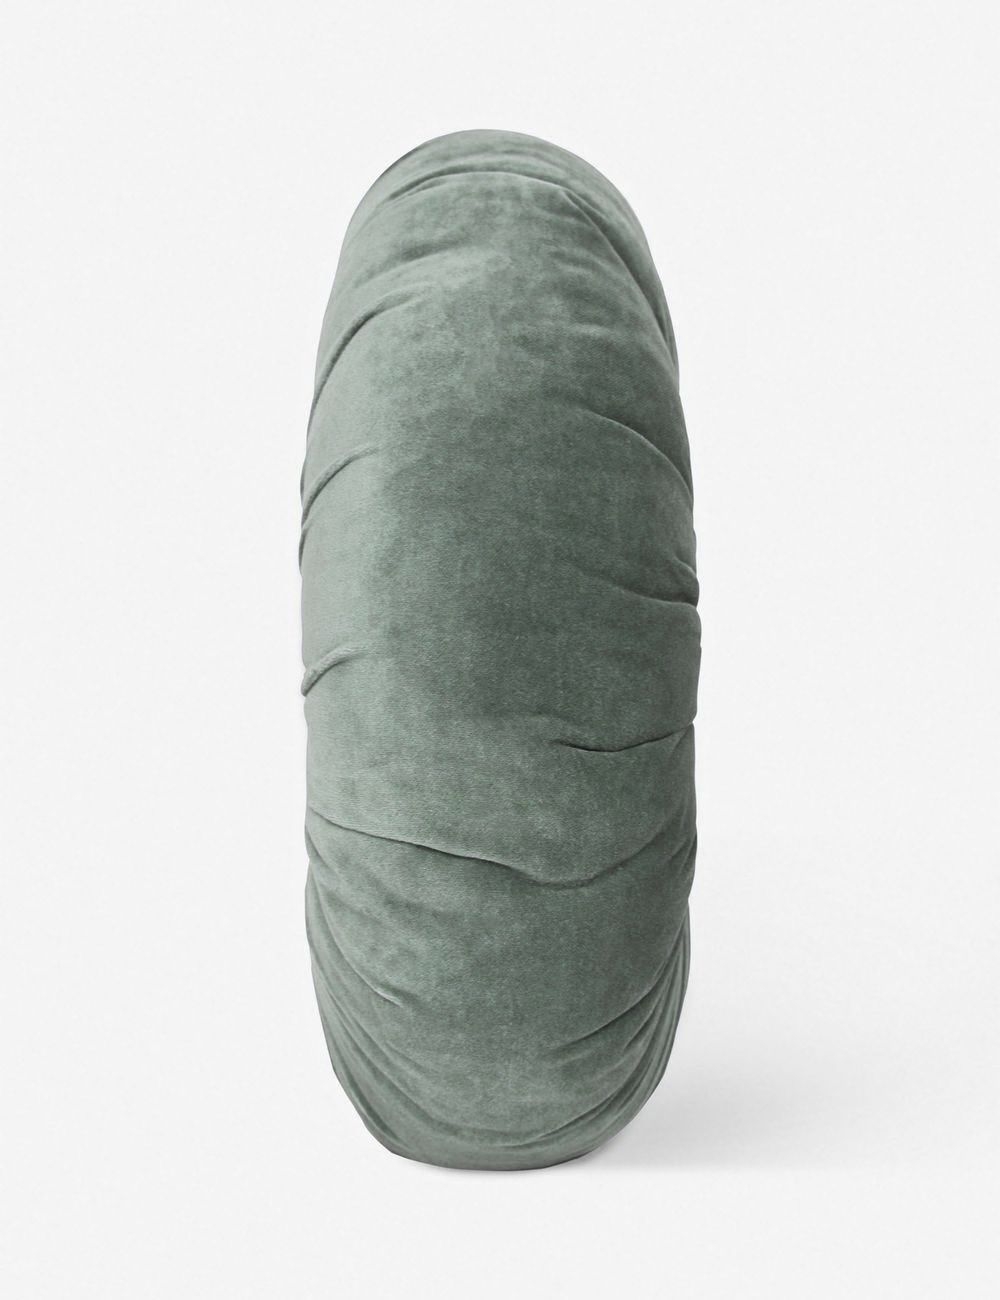 Monroe Velvet Round Pillow - Image 1